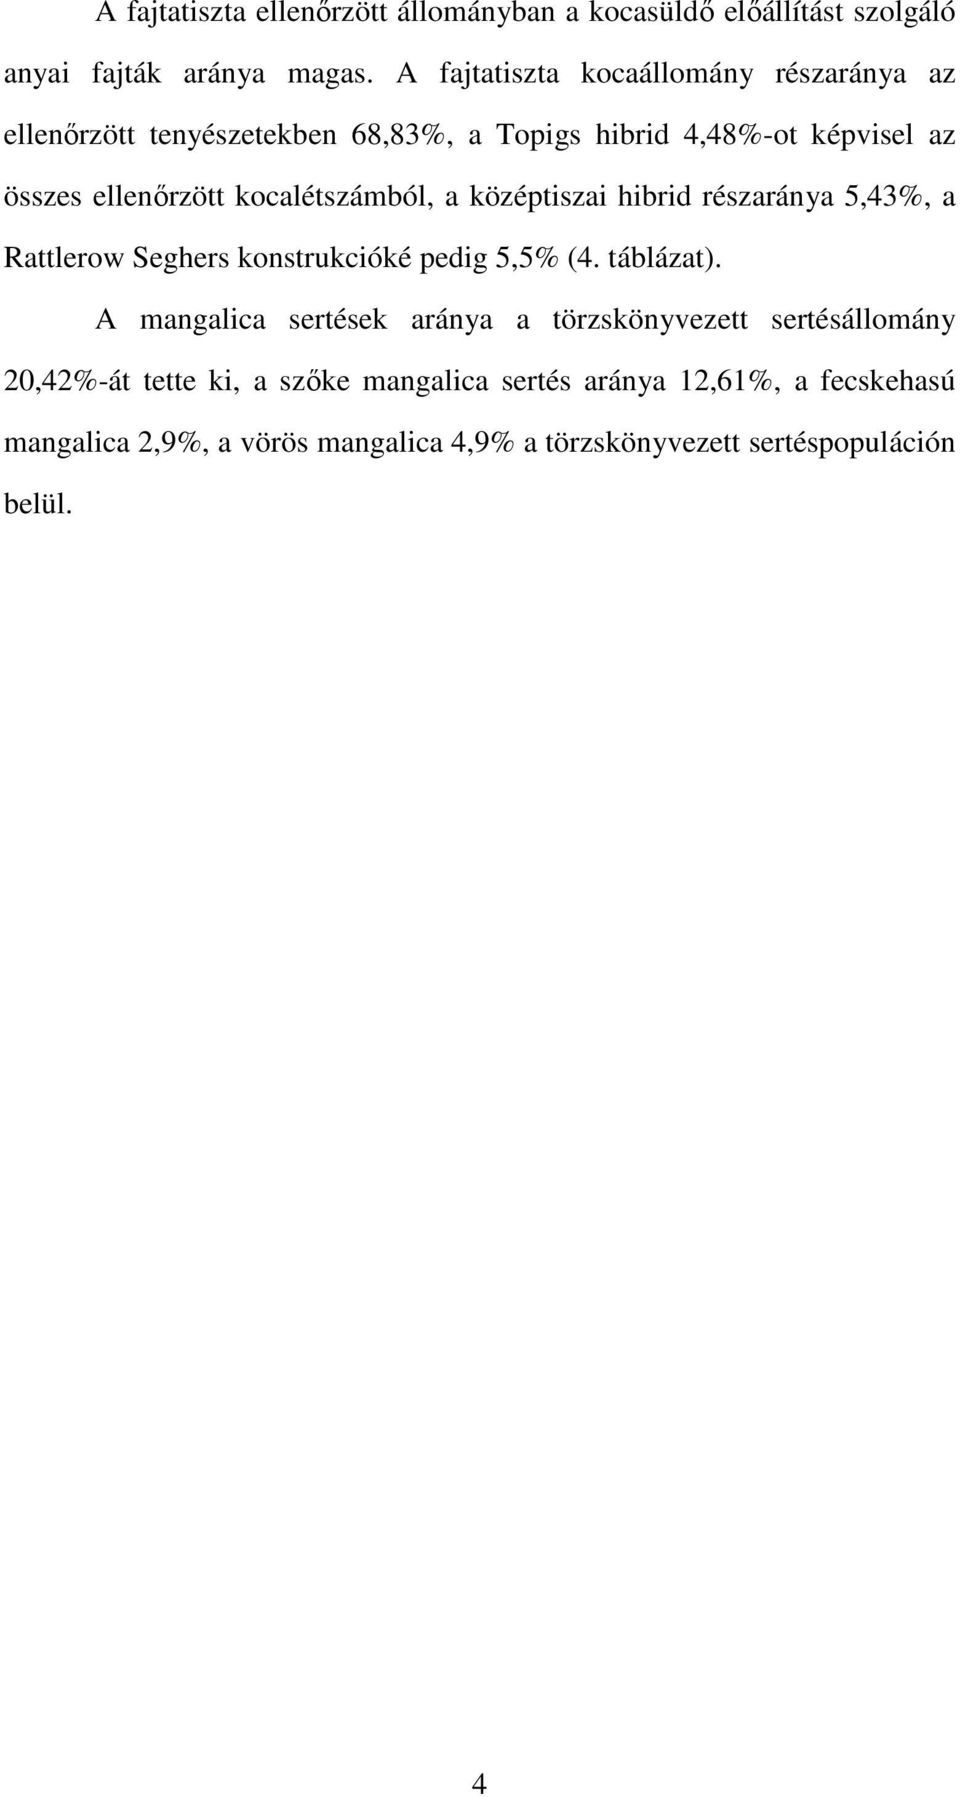 kocalétszámból, a középtiszai hibrid részaránya 5,43%, a Rattlerow Seghers konstrukcióké pedig 5,5% (4. táblázat).